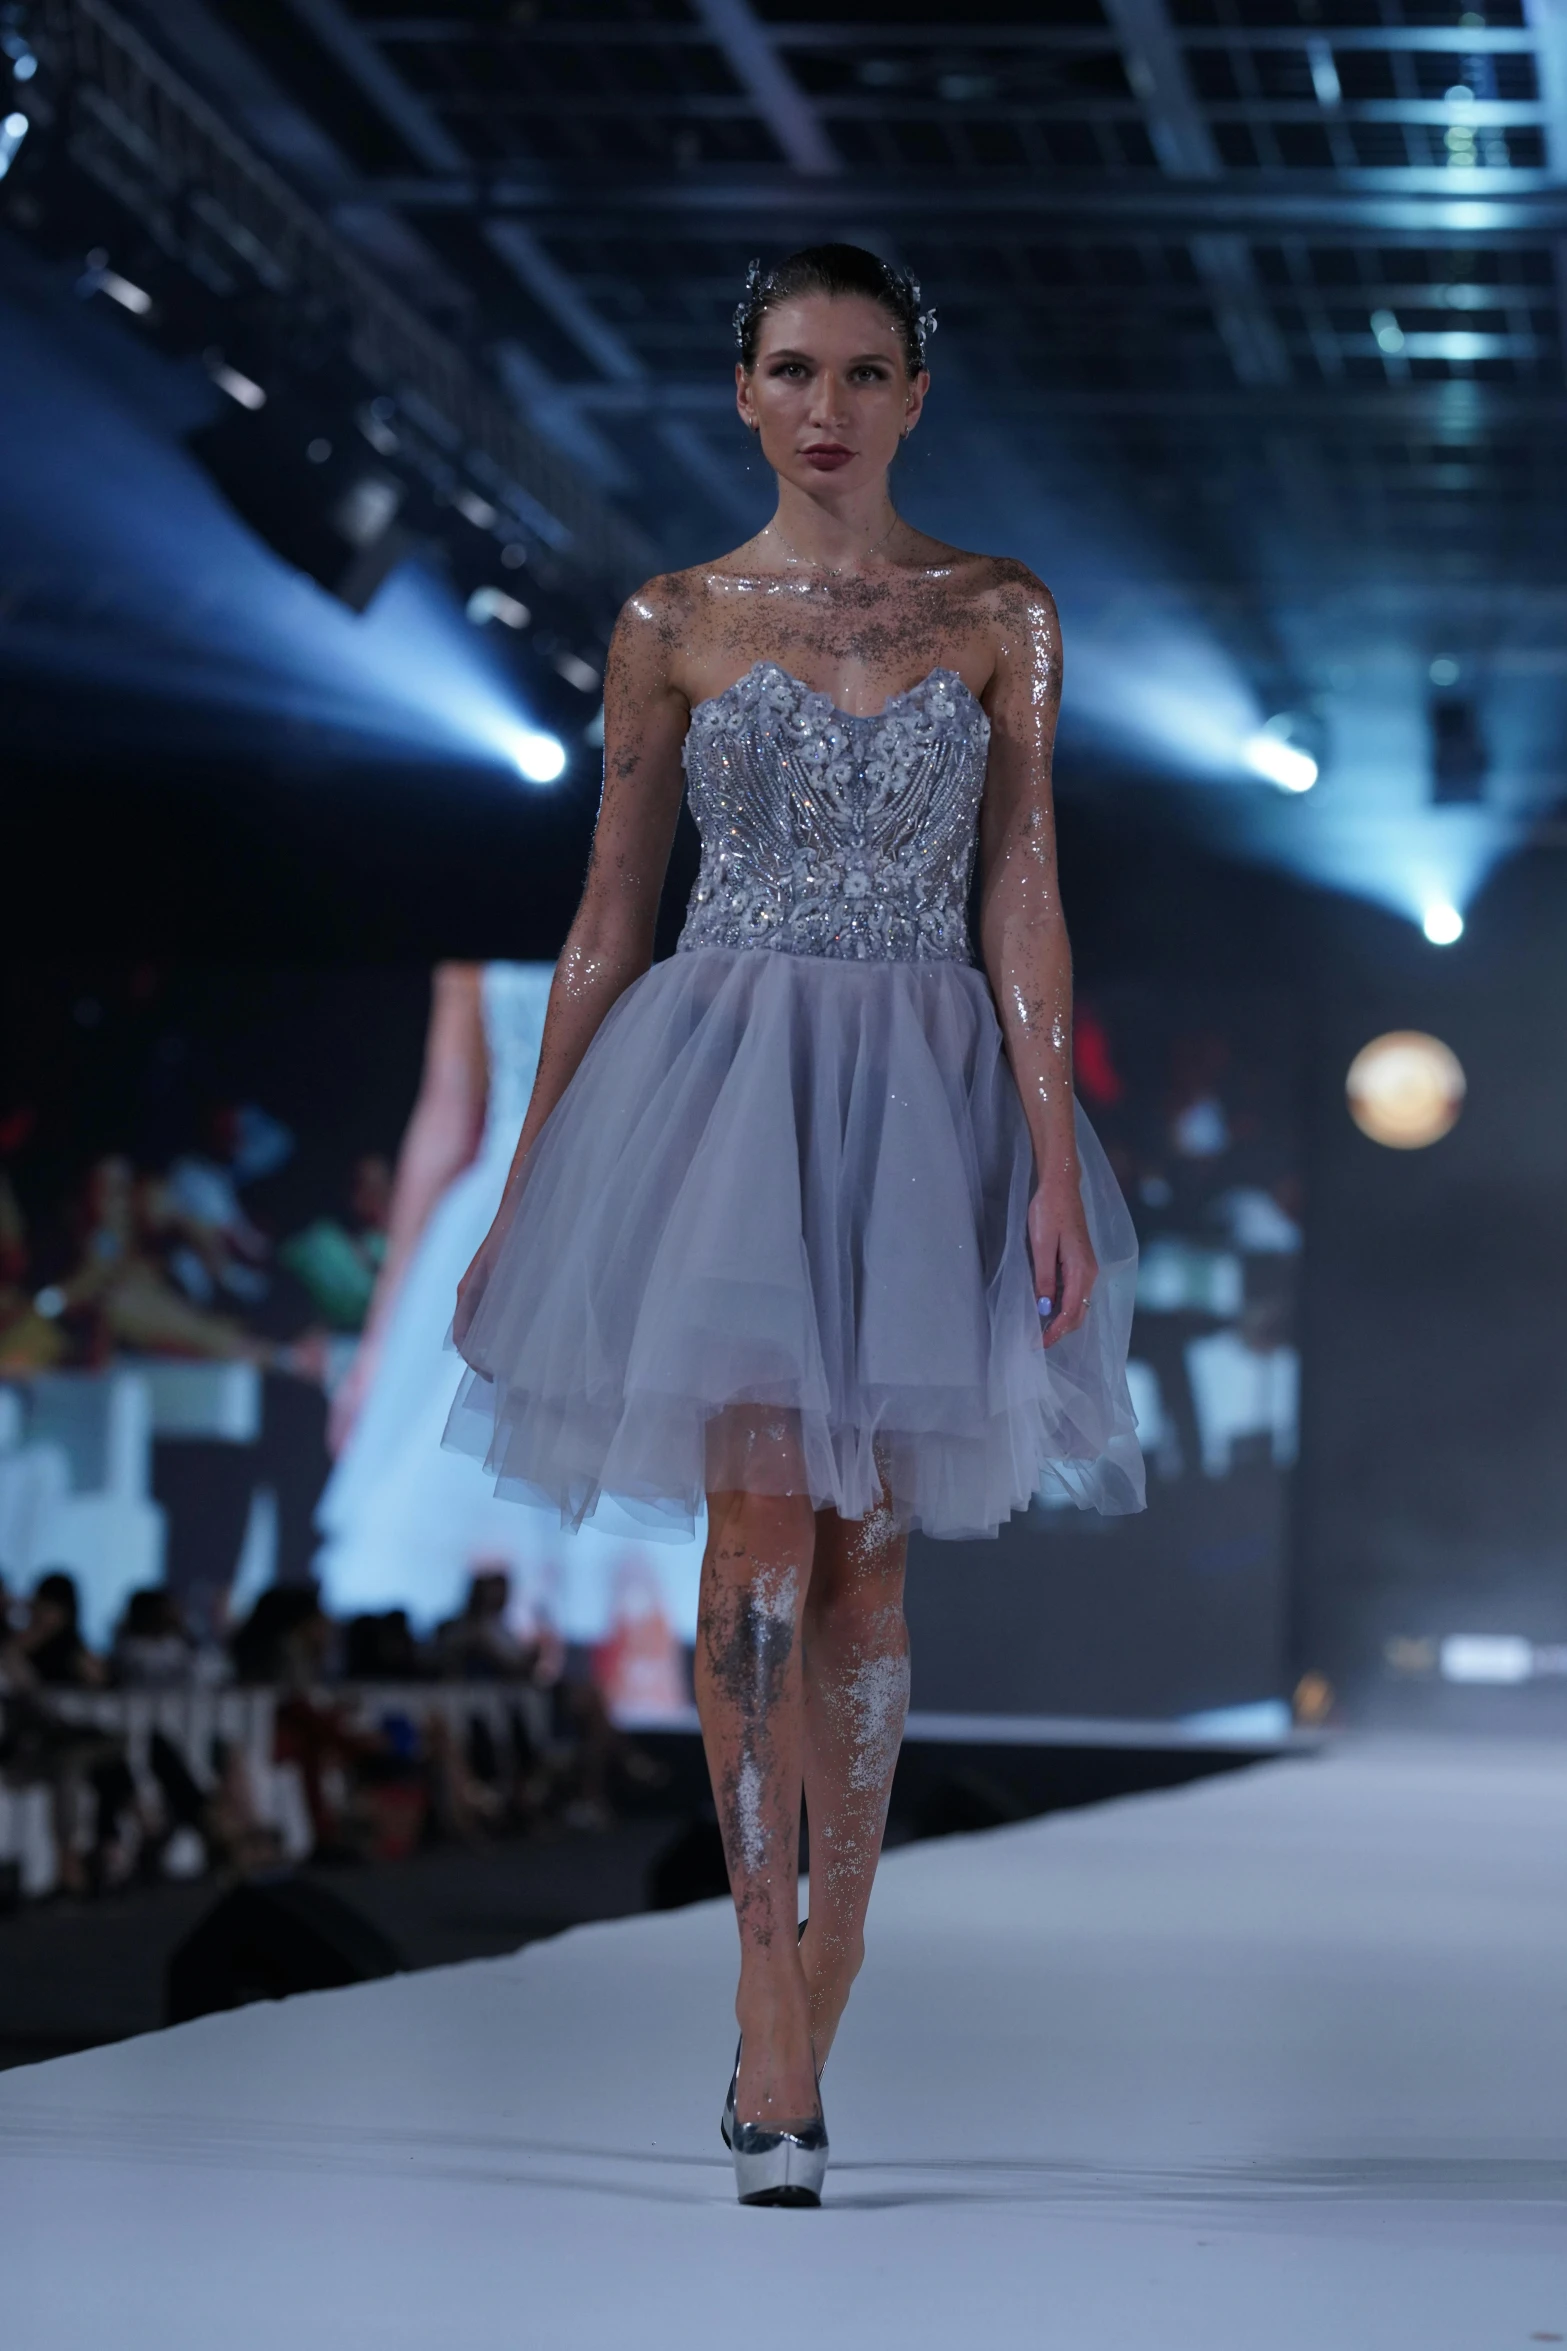 a model walking down a runway wearing a dress